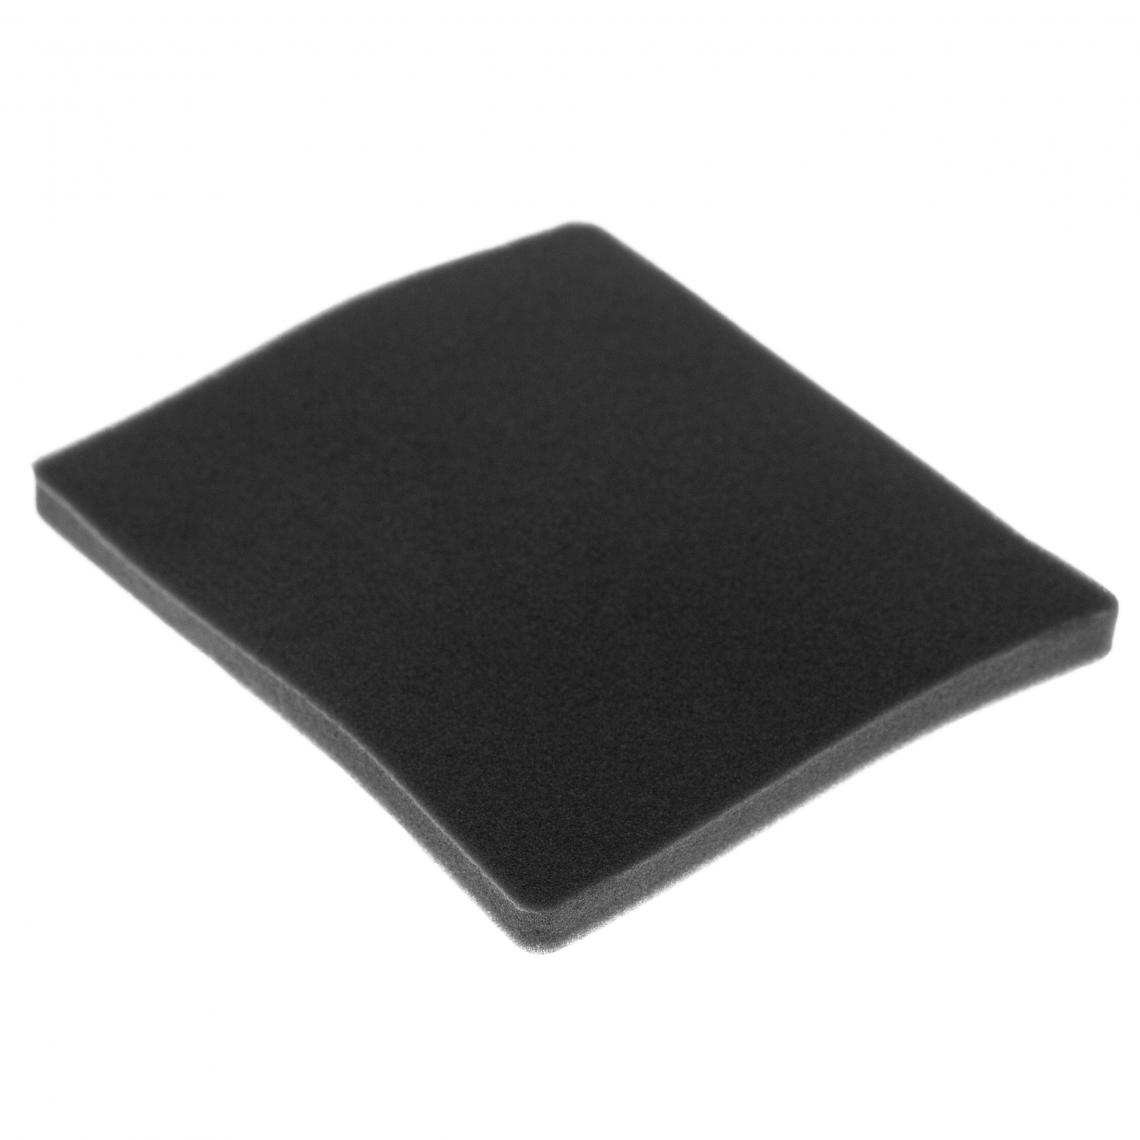 Vhbw - vhbw Filtre compatible avec Electrolux ZAM6116 (910288719) aspirateur - filtre de sortie d'air (filtre éponge), noir - Accessoire entretien des sols